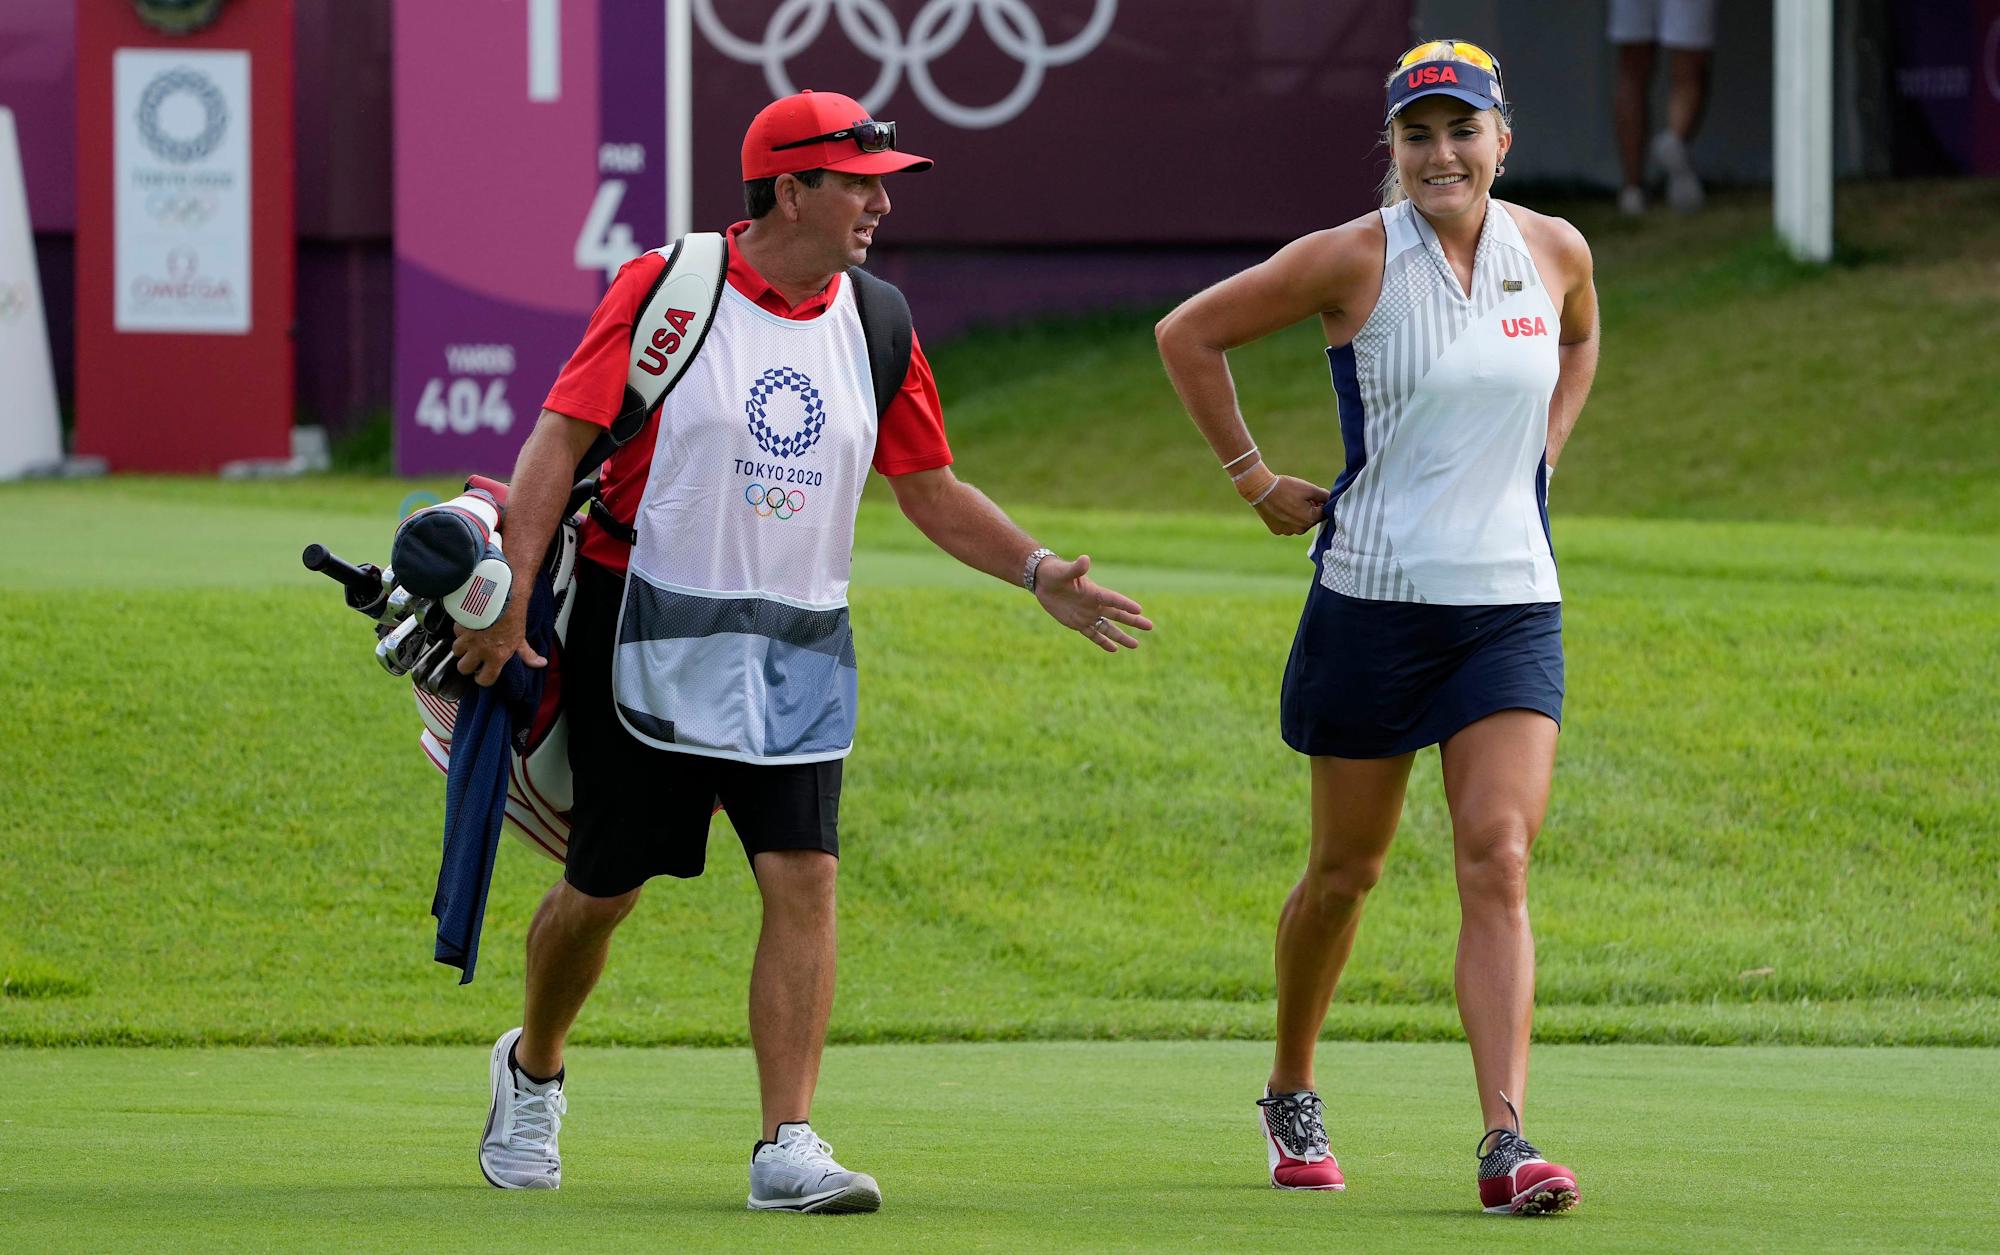 El caddie de Lexi Thompson, Jack Fulghum, renuncia a sus funciones debido al calor durante el torneo olímpico de golf femenino.